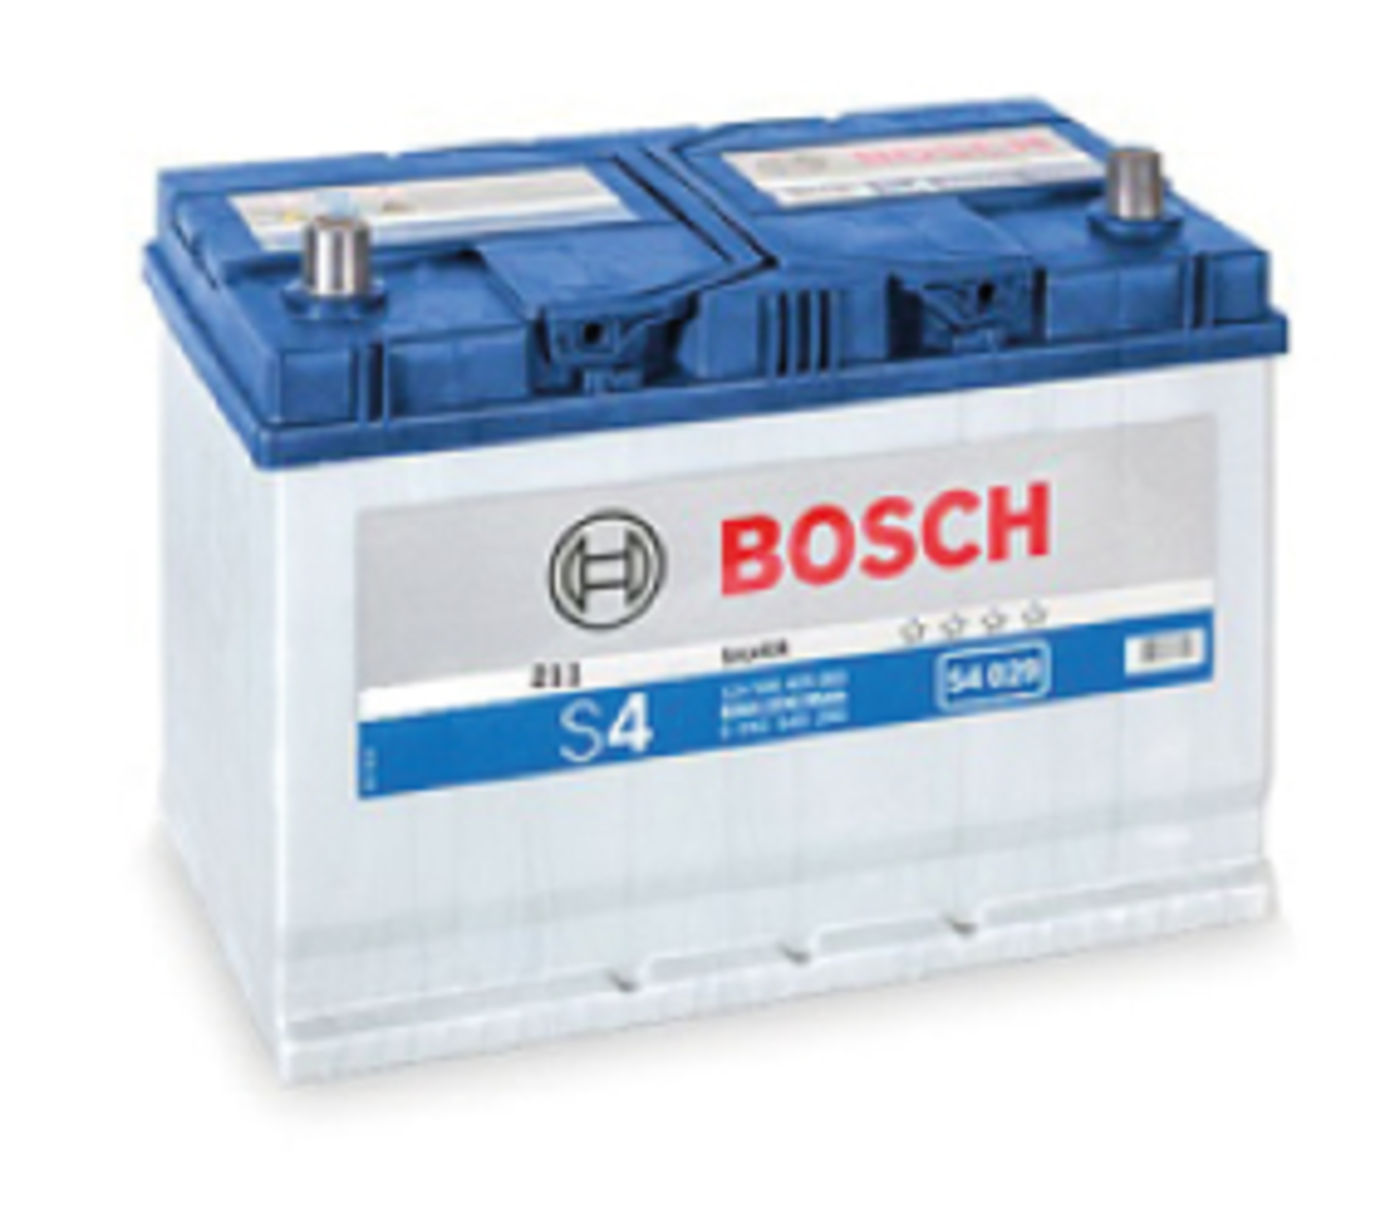 Bosch 4DLT HD